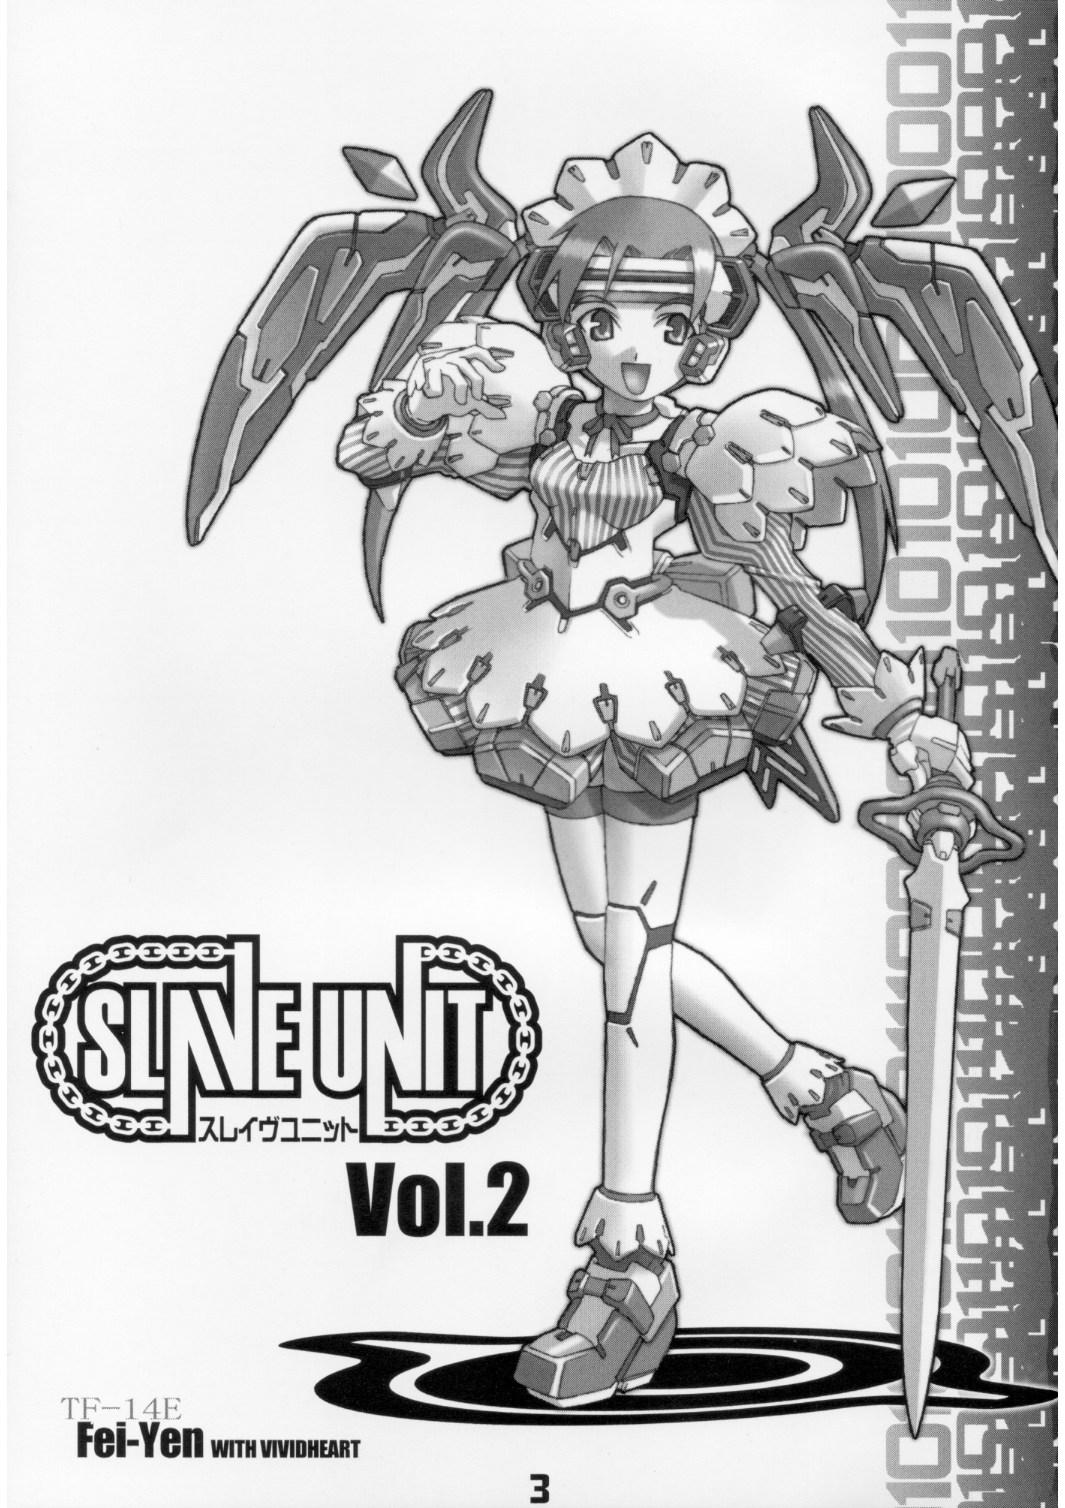 Tiny Slave Unit Vol.2 - Dead or alive Darkstalkers Sakura taisen Devil may cry Excel saga Athletic - Page 2